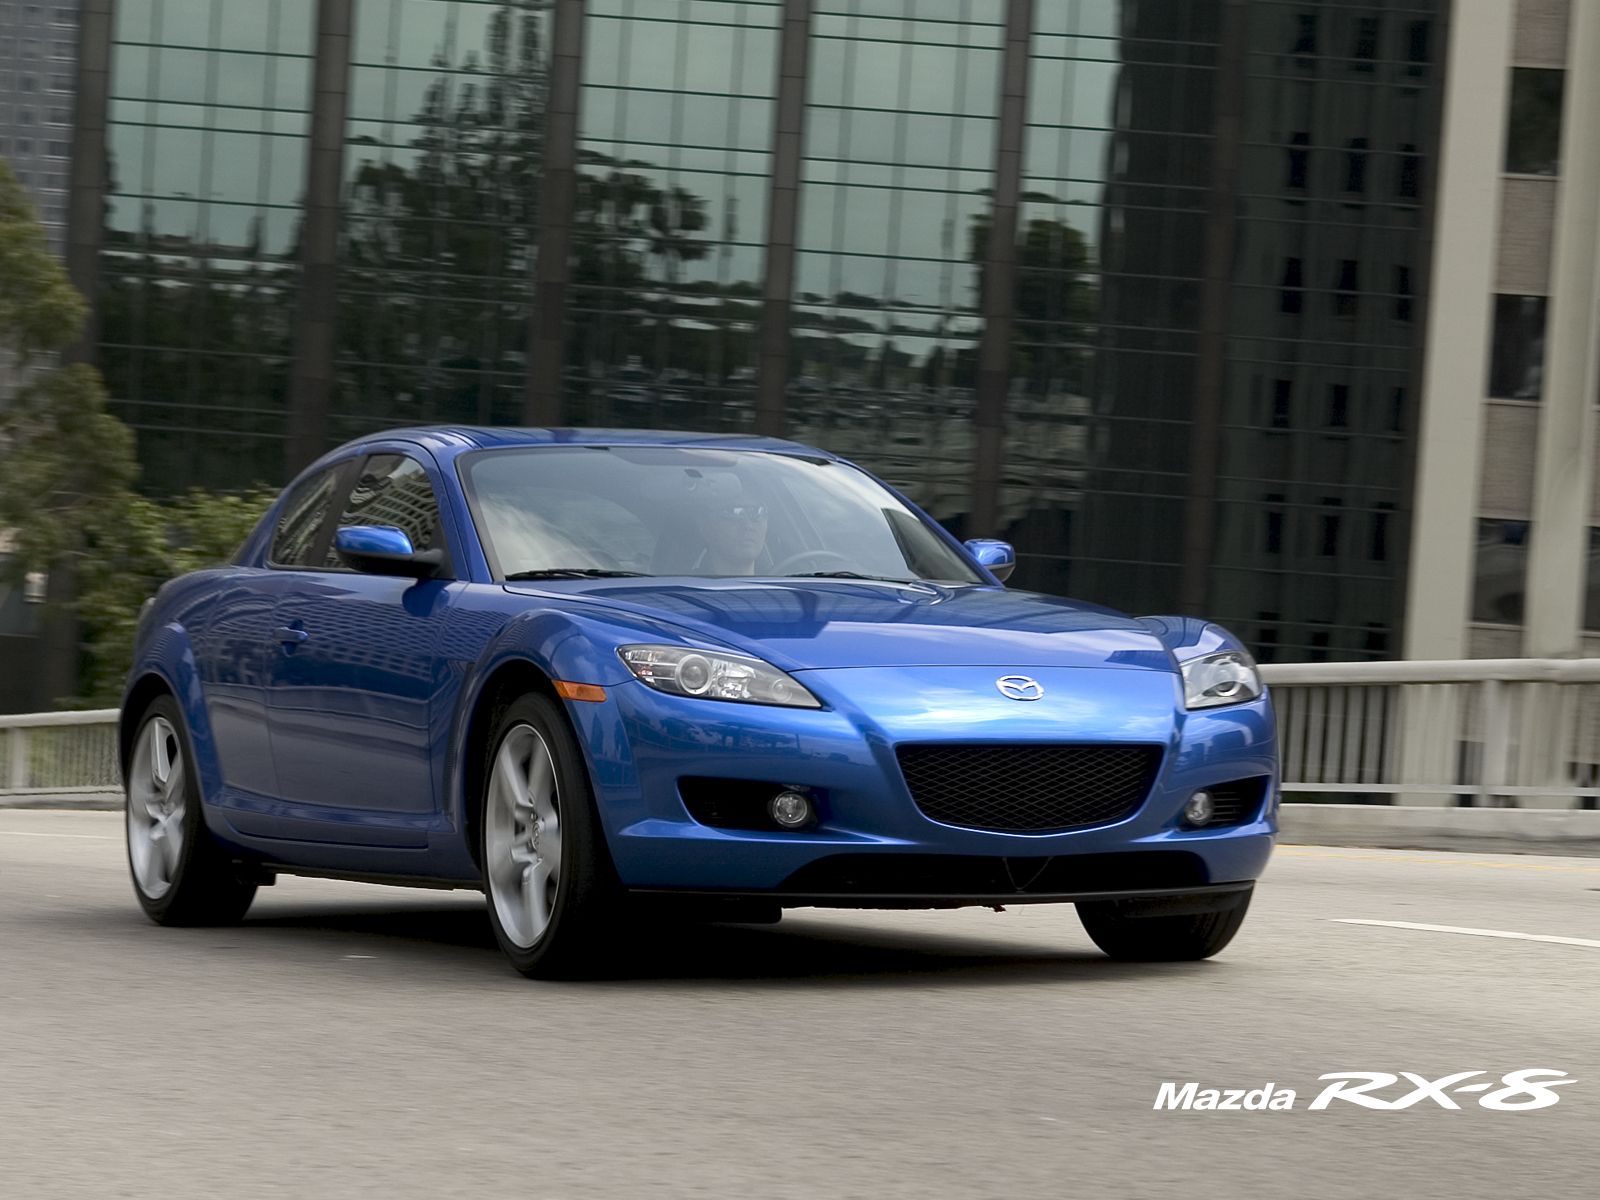  2007 Mazda RX-8 